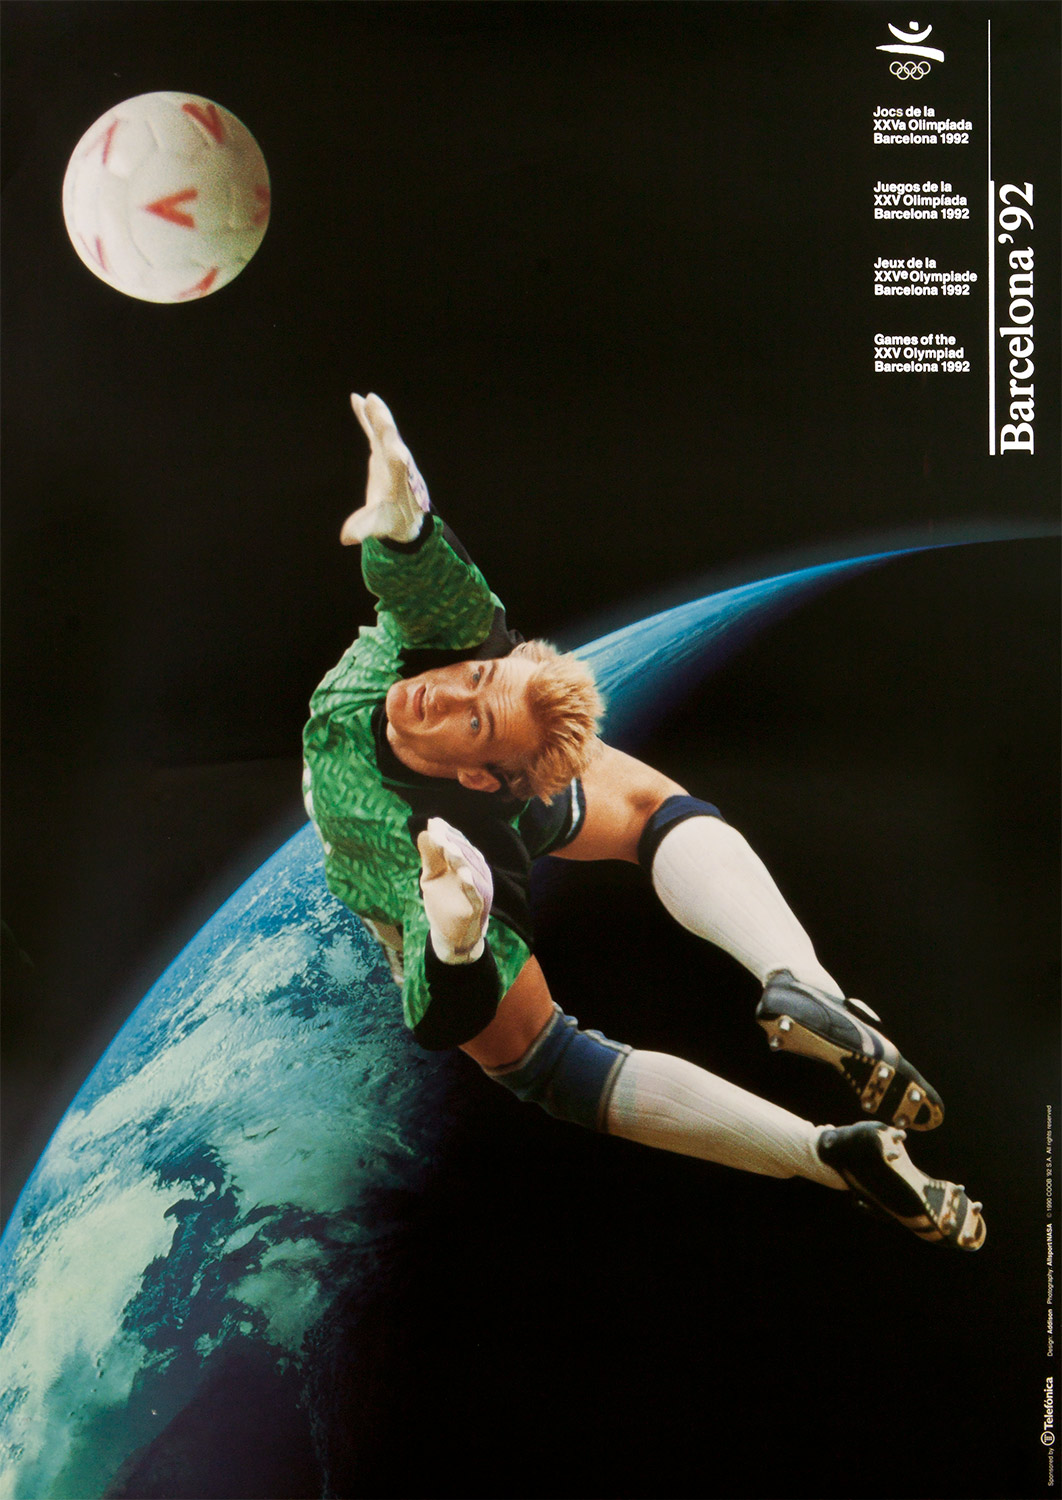 Plakat mit Abbildung eines nach dem Ball hechtenden Torwarts. Im Hintergrund der Planet Erde